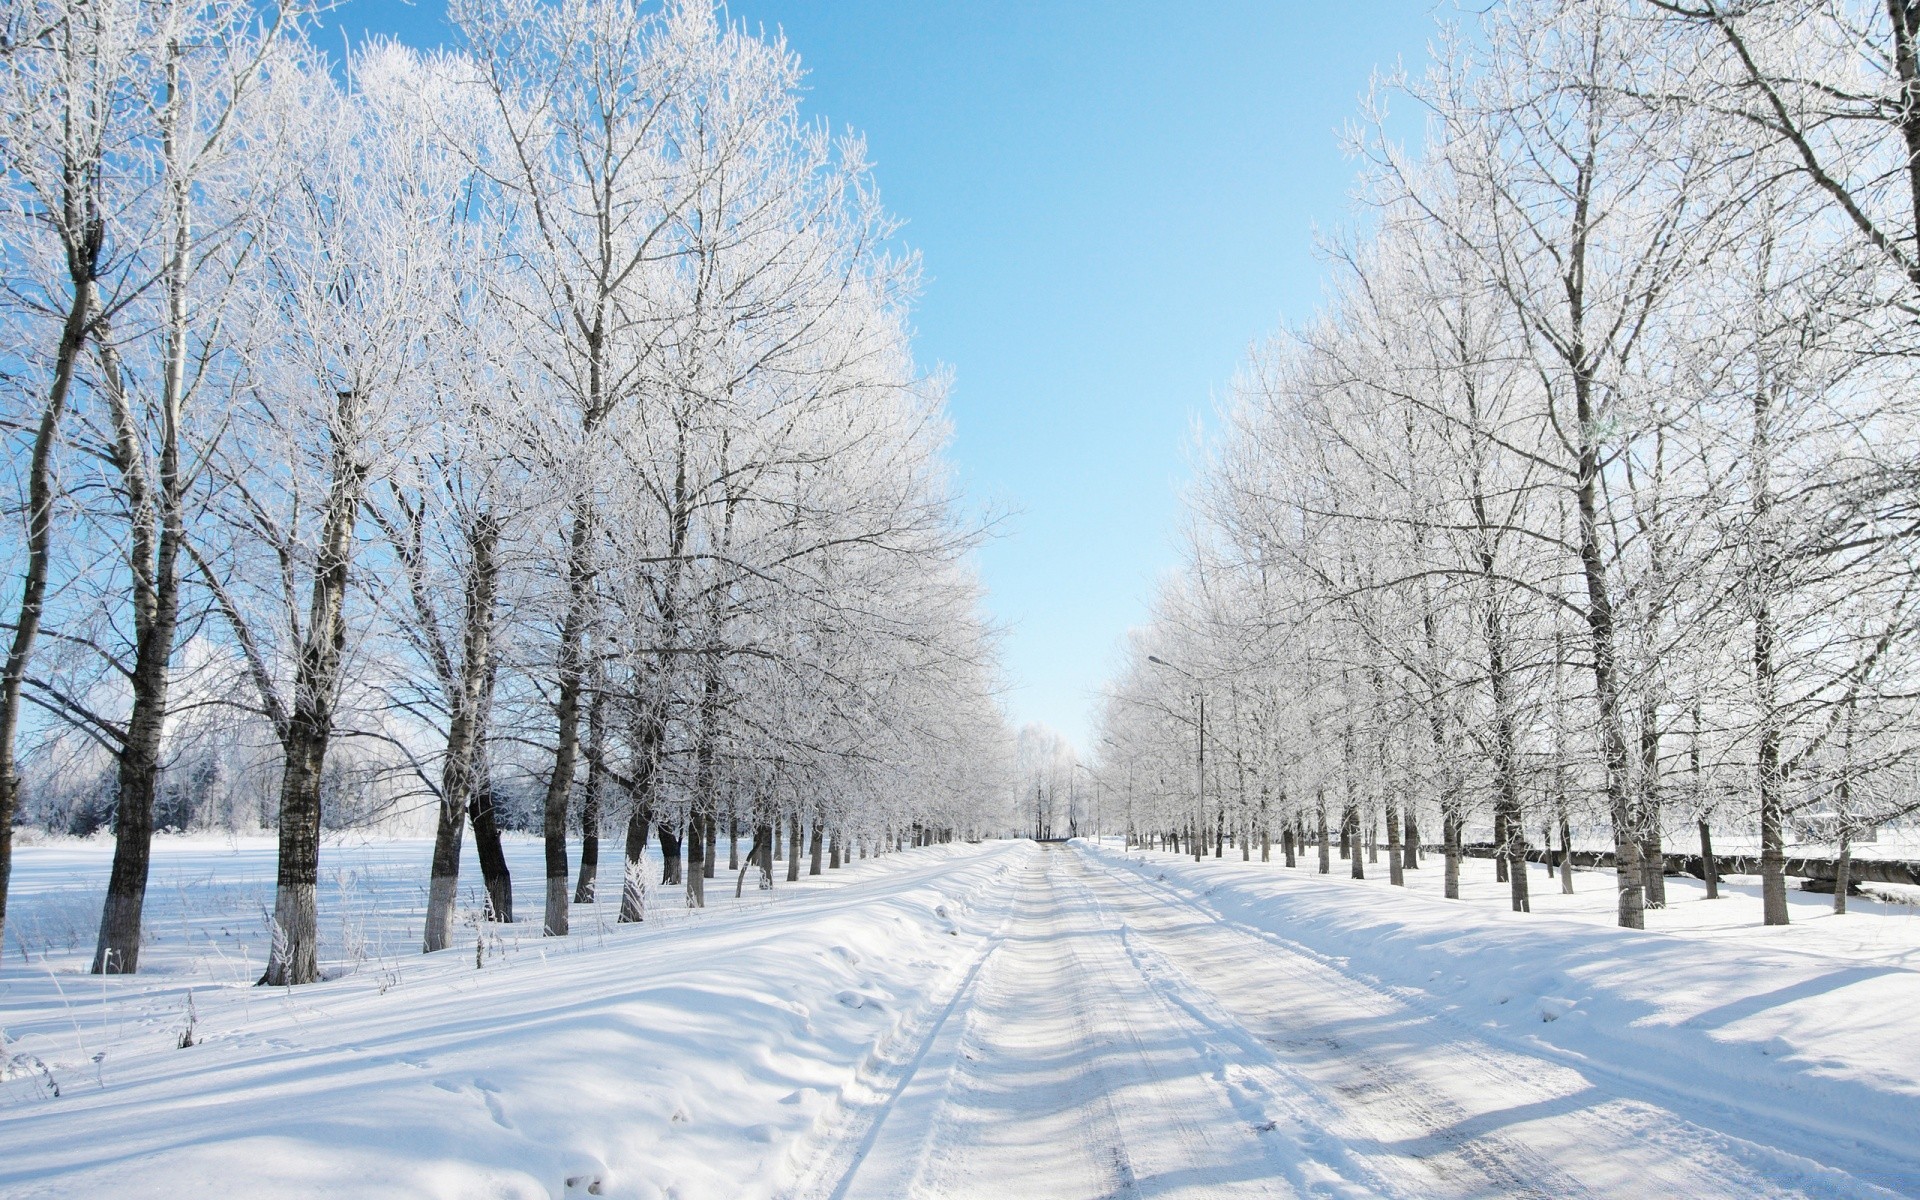 зима снег холодная мороз замороженные дерево сезон погода пейзаж древесины лед пургу снежное дорога снег-белый живописный руководство филиал сцена морозный